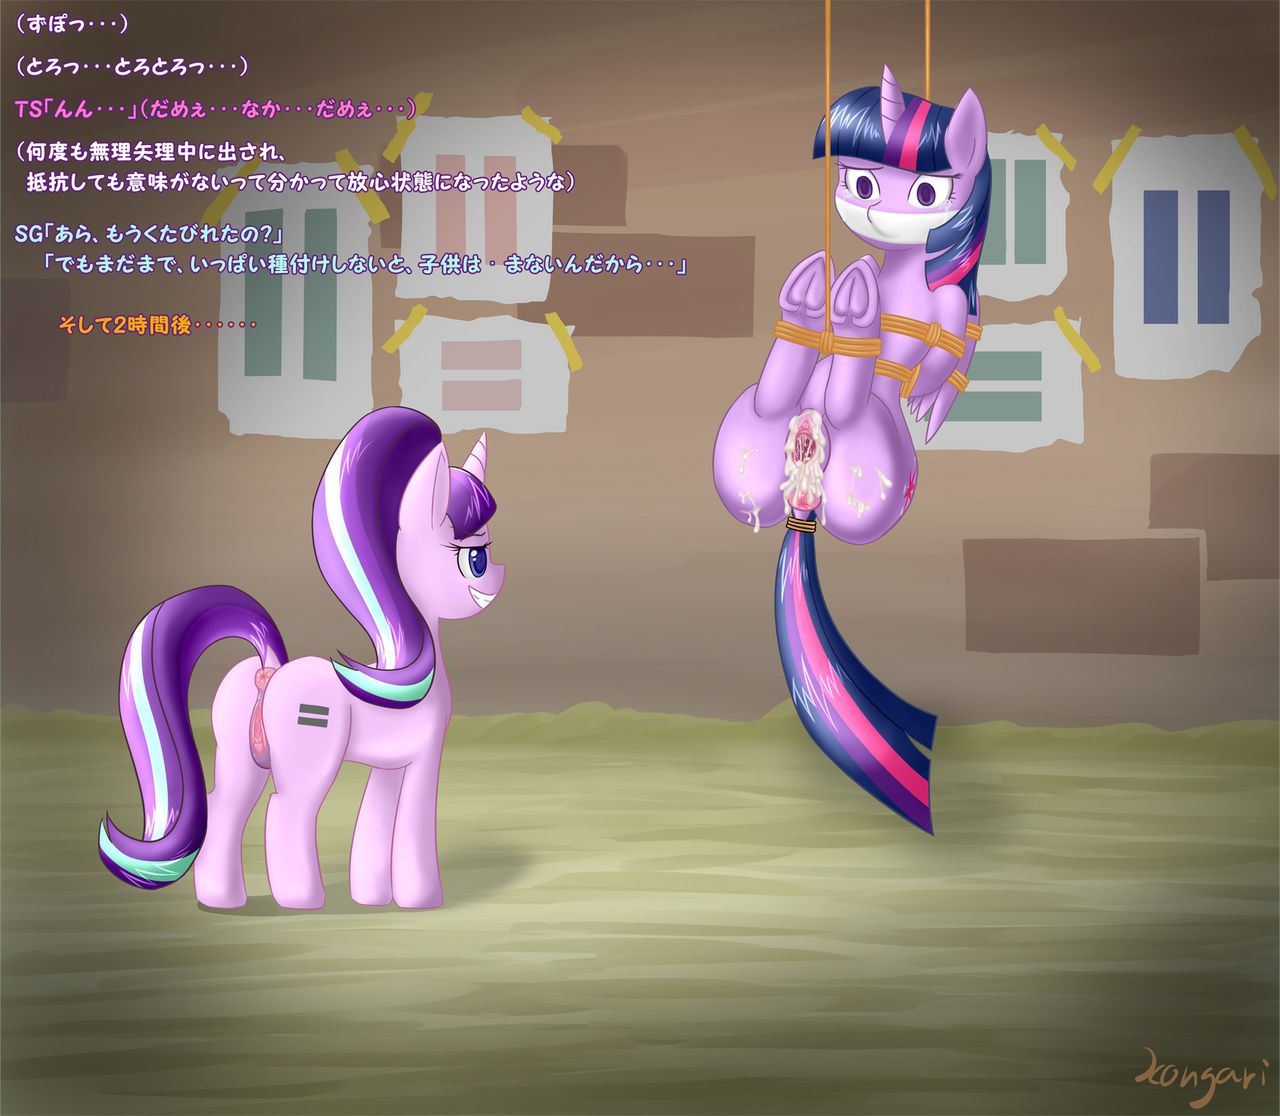 [こんがりトースト] S5E01 BAD END (parts 1-2) (My Little Pony: Friendship is Magic) 10